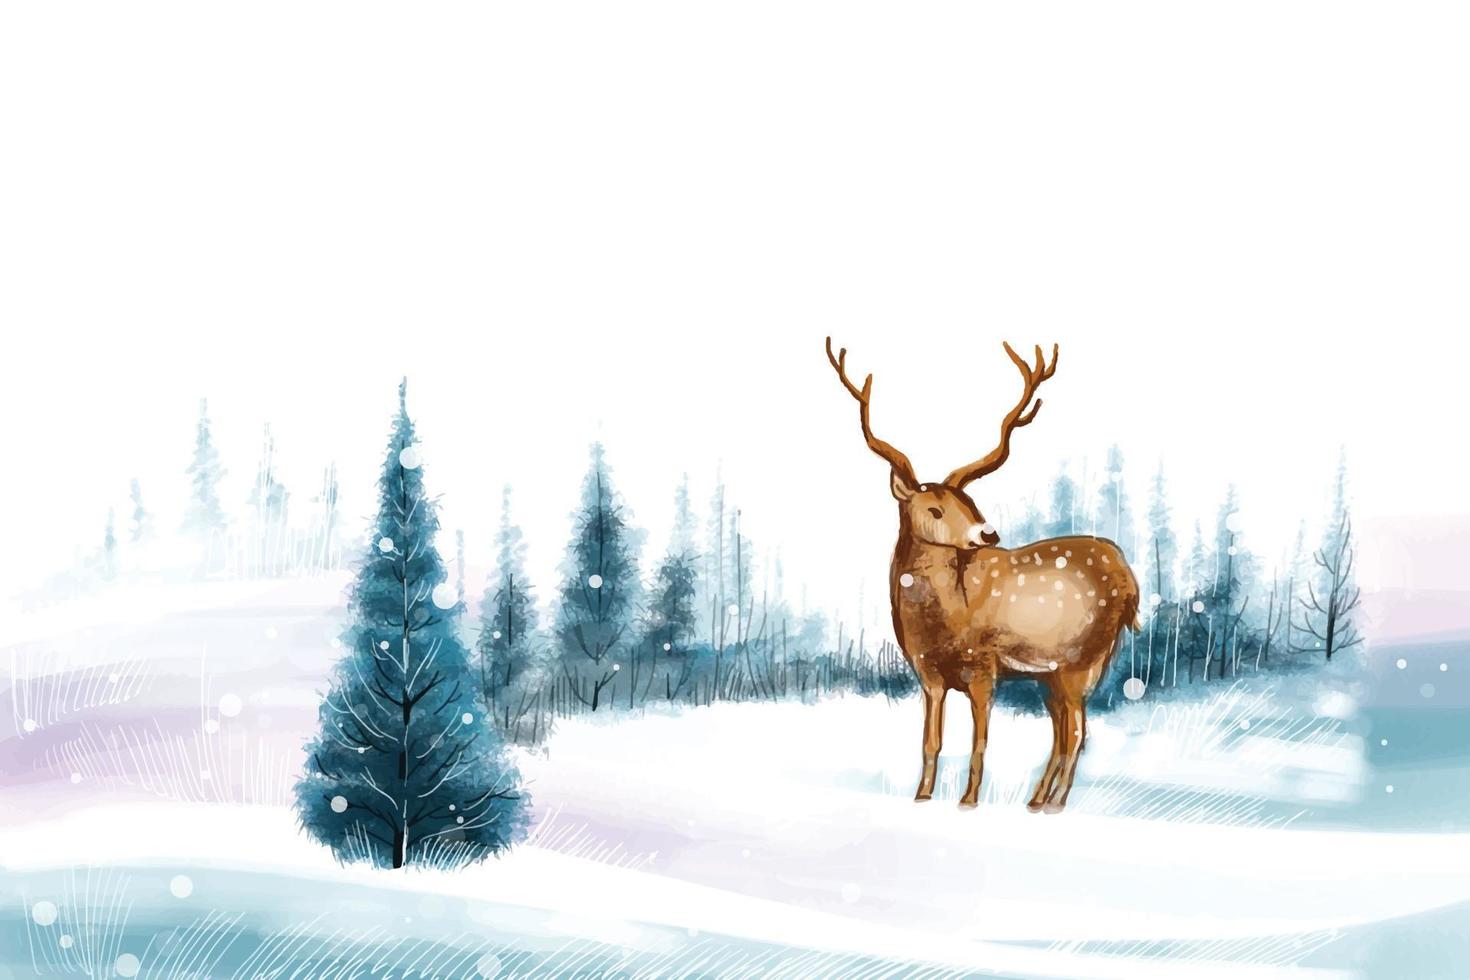 año nuevo y árbol de navidad fondo de paisaje de invierno con renos vector